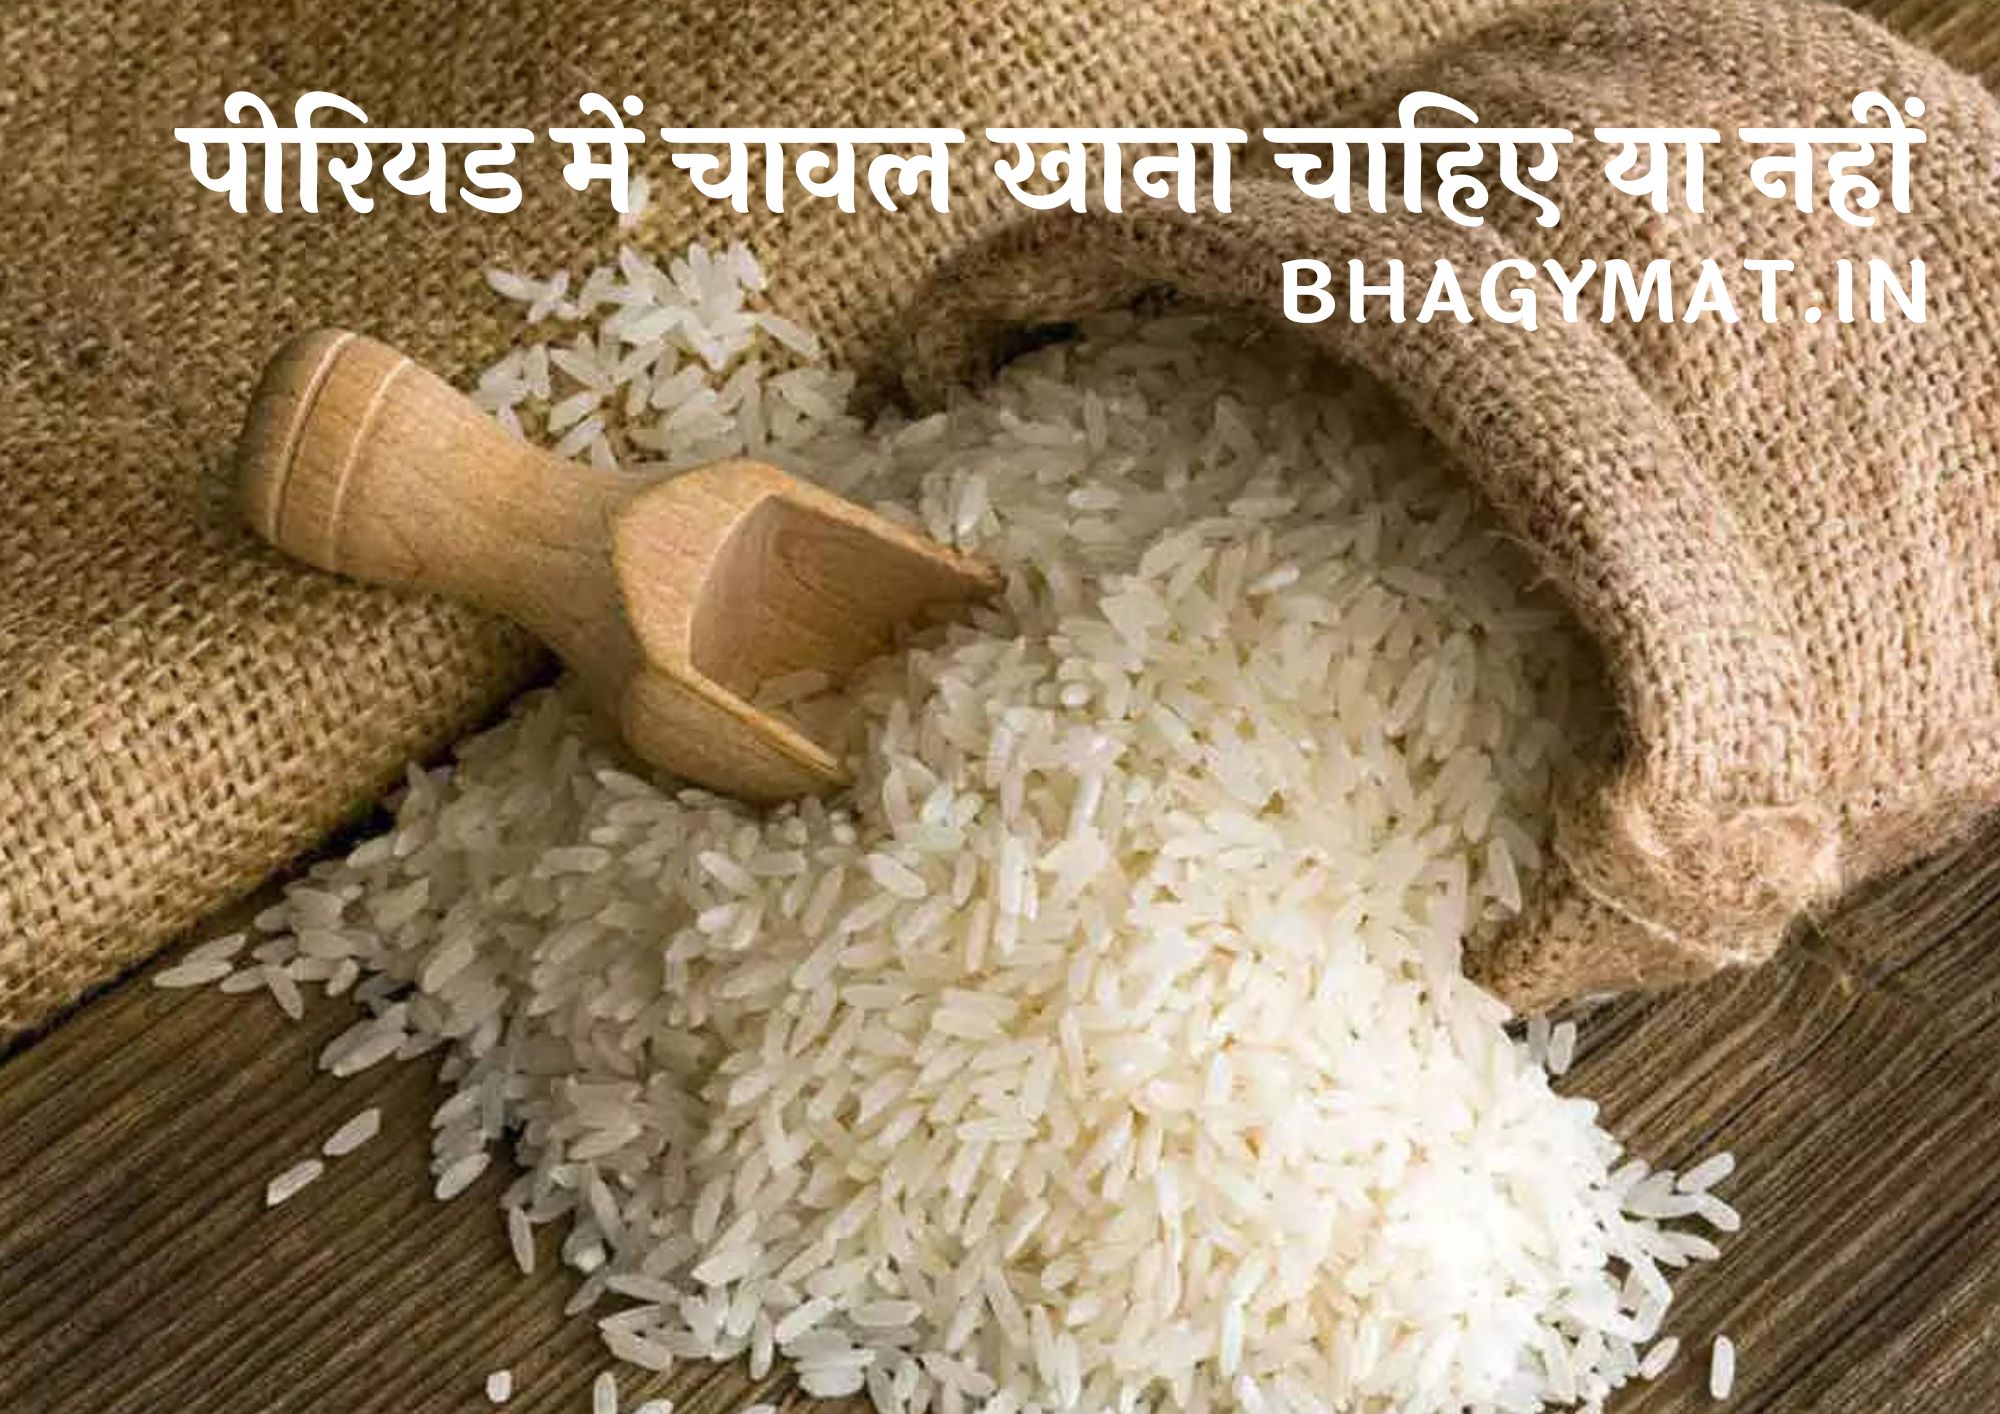 पीरियड में चावल खाना चाहिए या नहीं (Periods Me Chawal Khana Chahiye Ya Nahi)